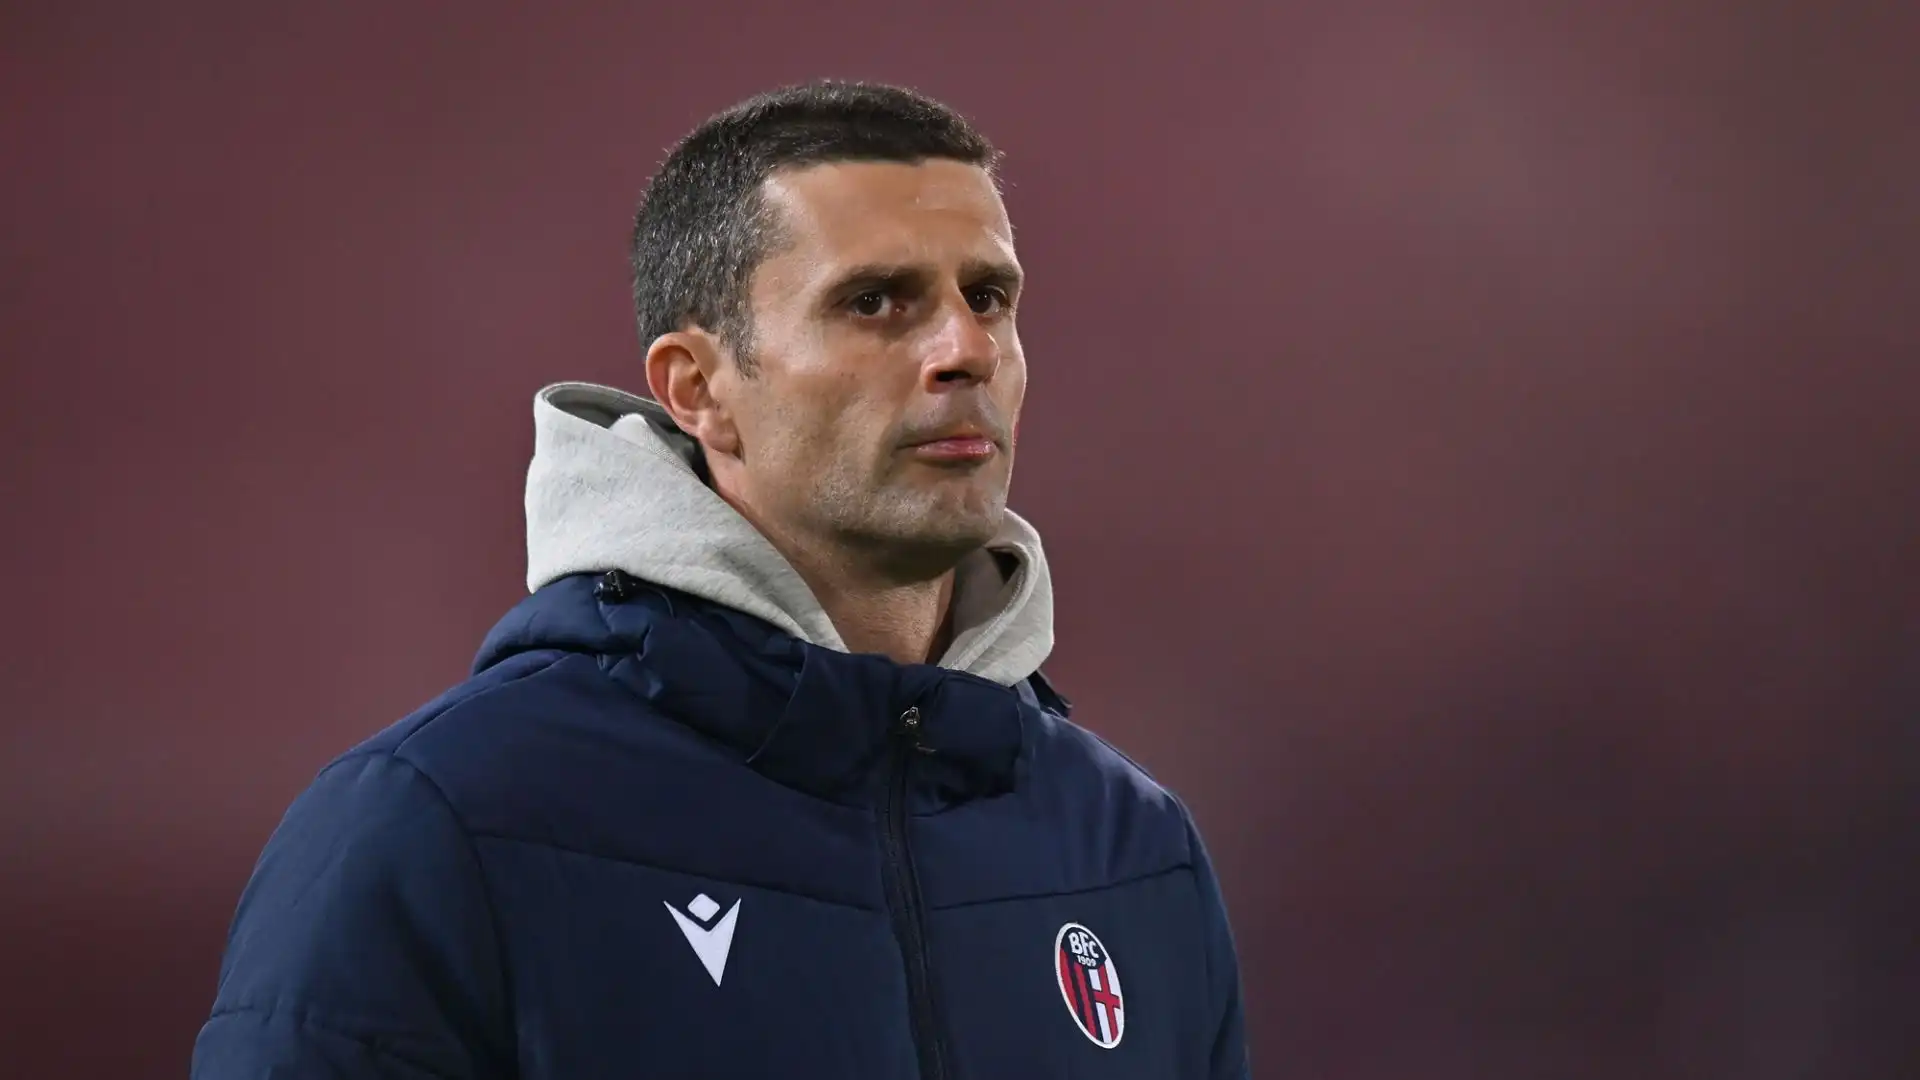 L'allenatore del Bologna Thiago Motta è stato avvisato dell'interesse della Juventus